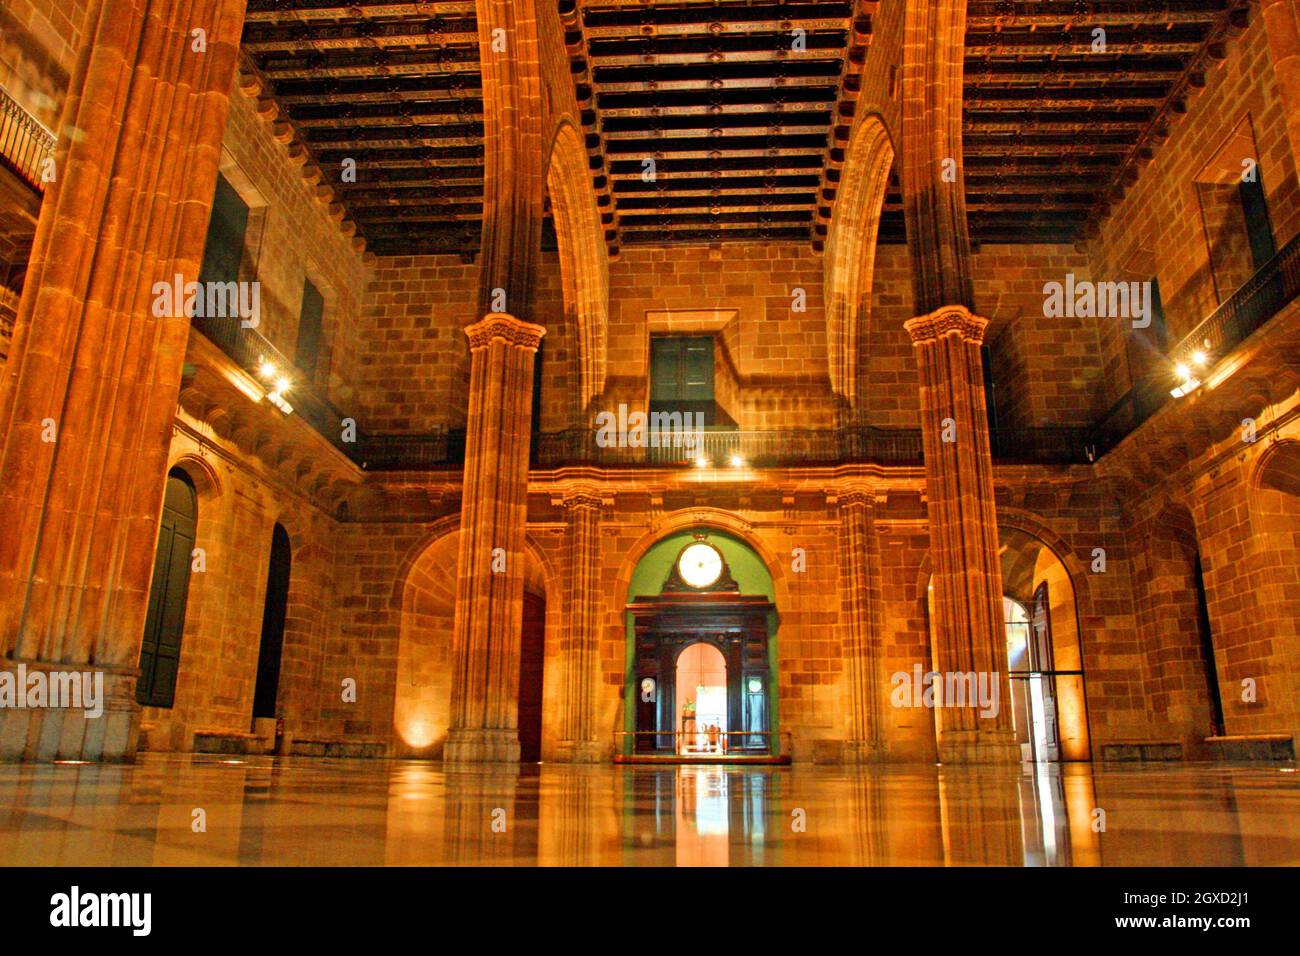 Contracting Hall, Palau de la Llotja de Mar, Barcelona, Catalonia, Spain Stock Photo